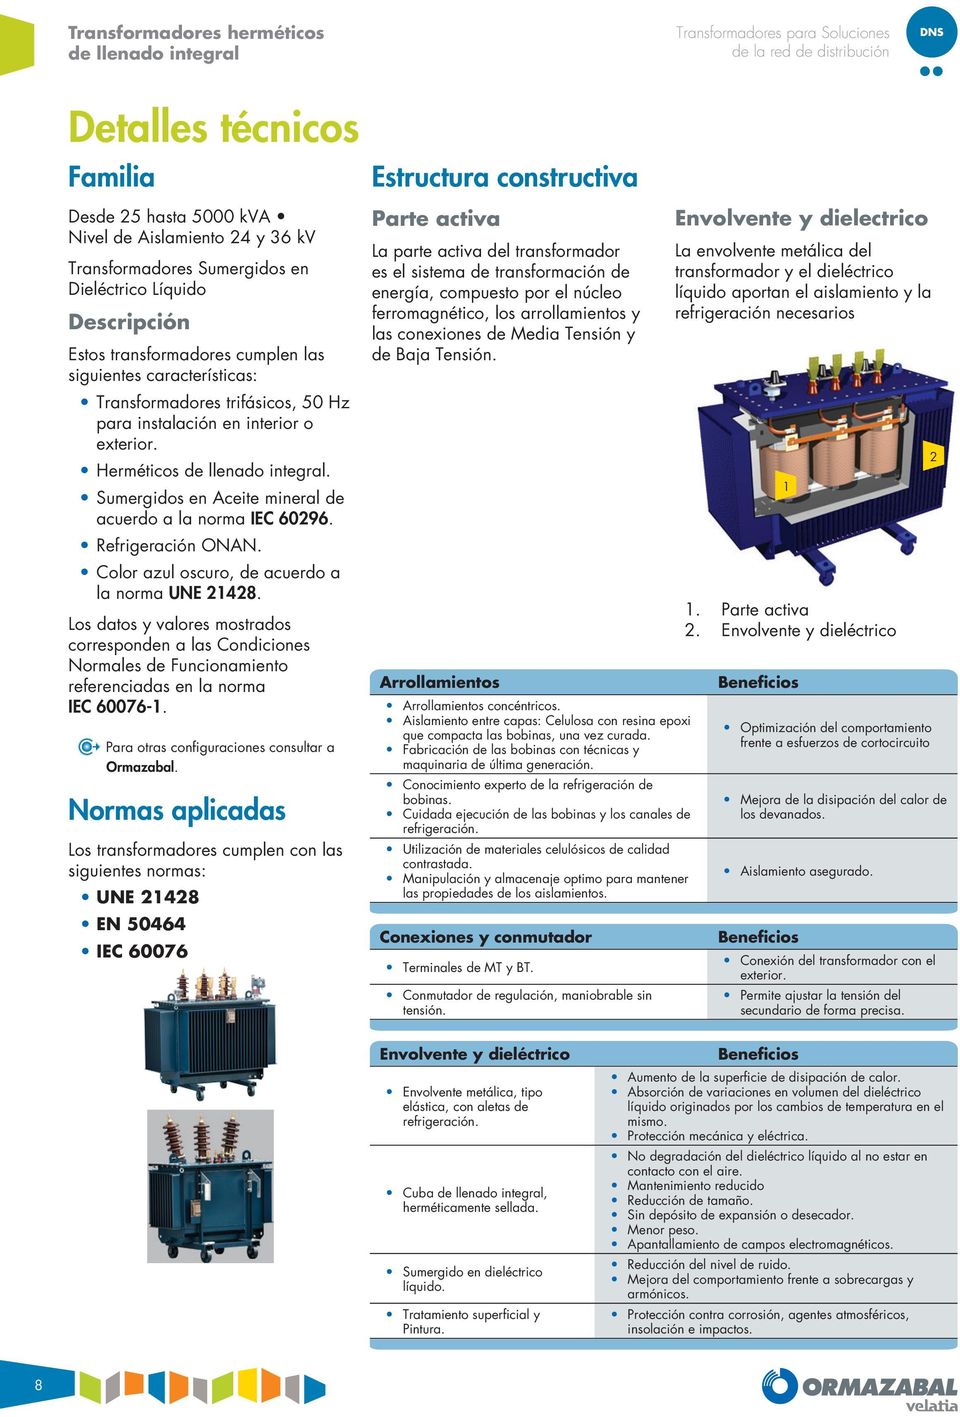 Imagen de la empresa Ormazábal Cotradis Transformadores a la que se le ofrecen los descuentos